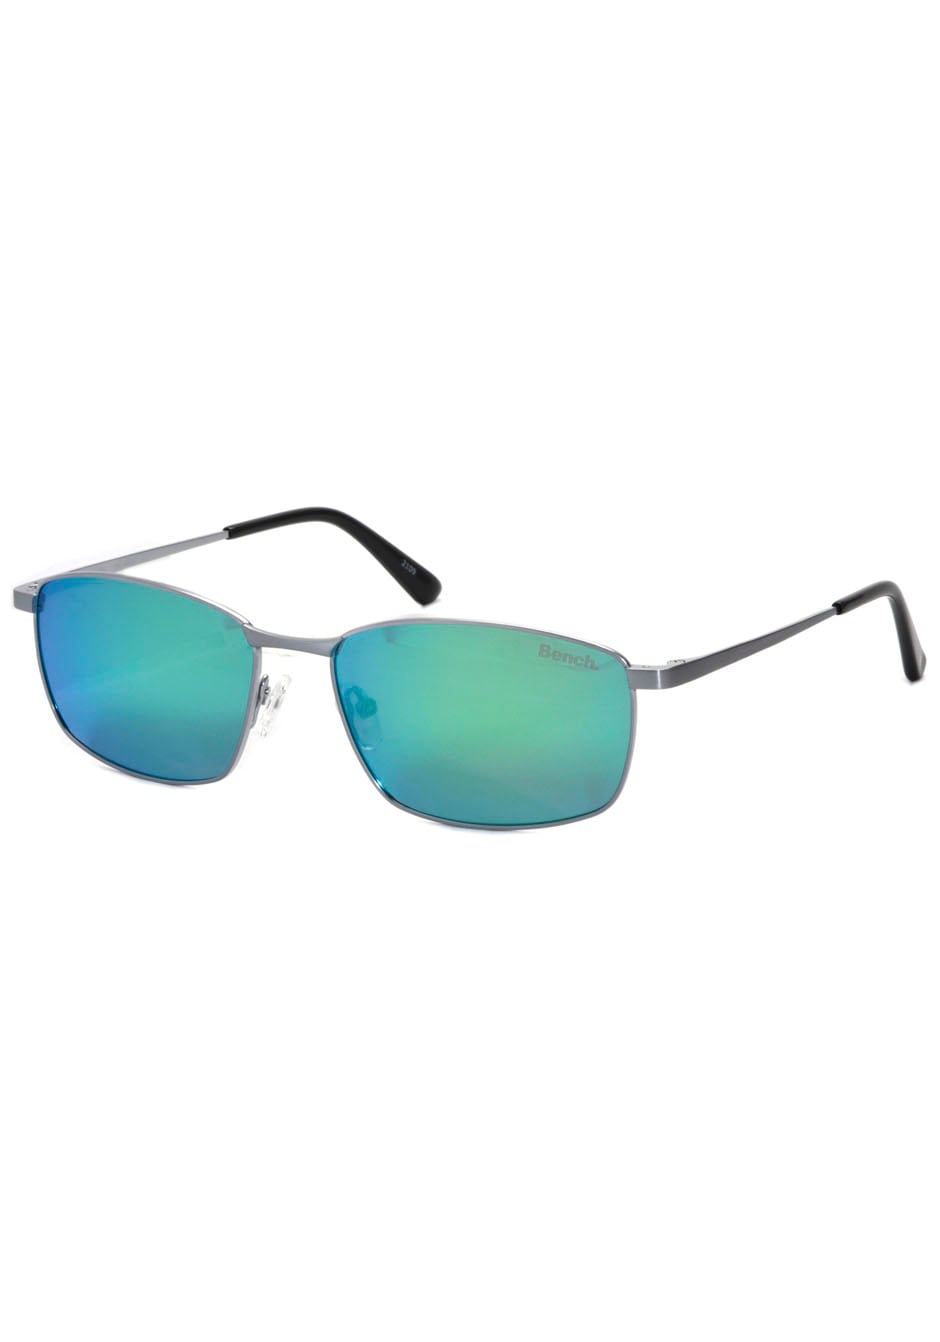 Bench. Sonnenbrille, ultraleicht an für | Jelmoli-Versand bestellen online Material-Qualität Ansprüche höchste